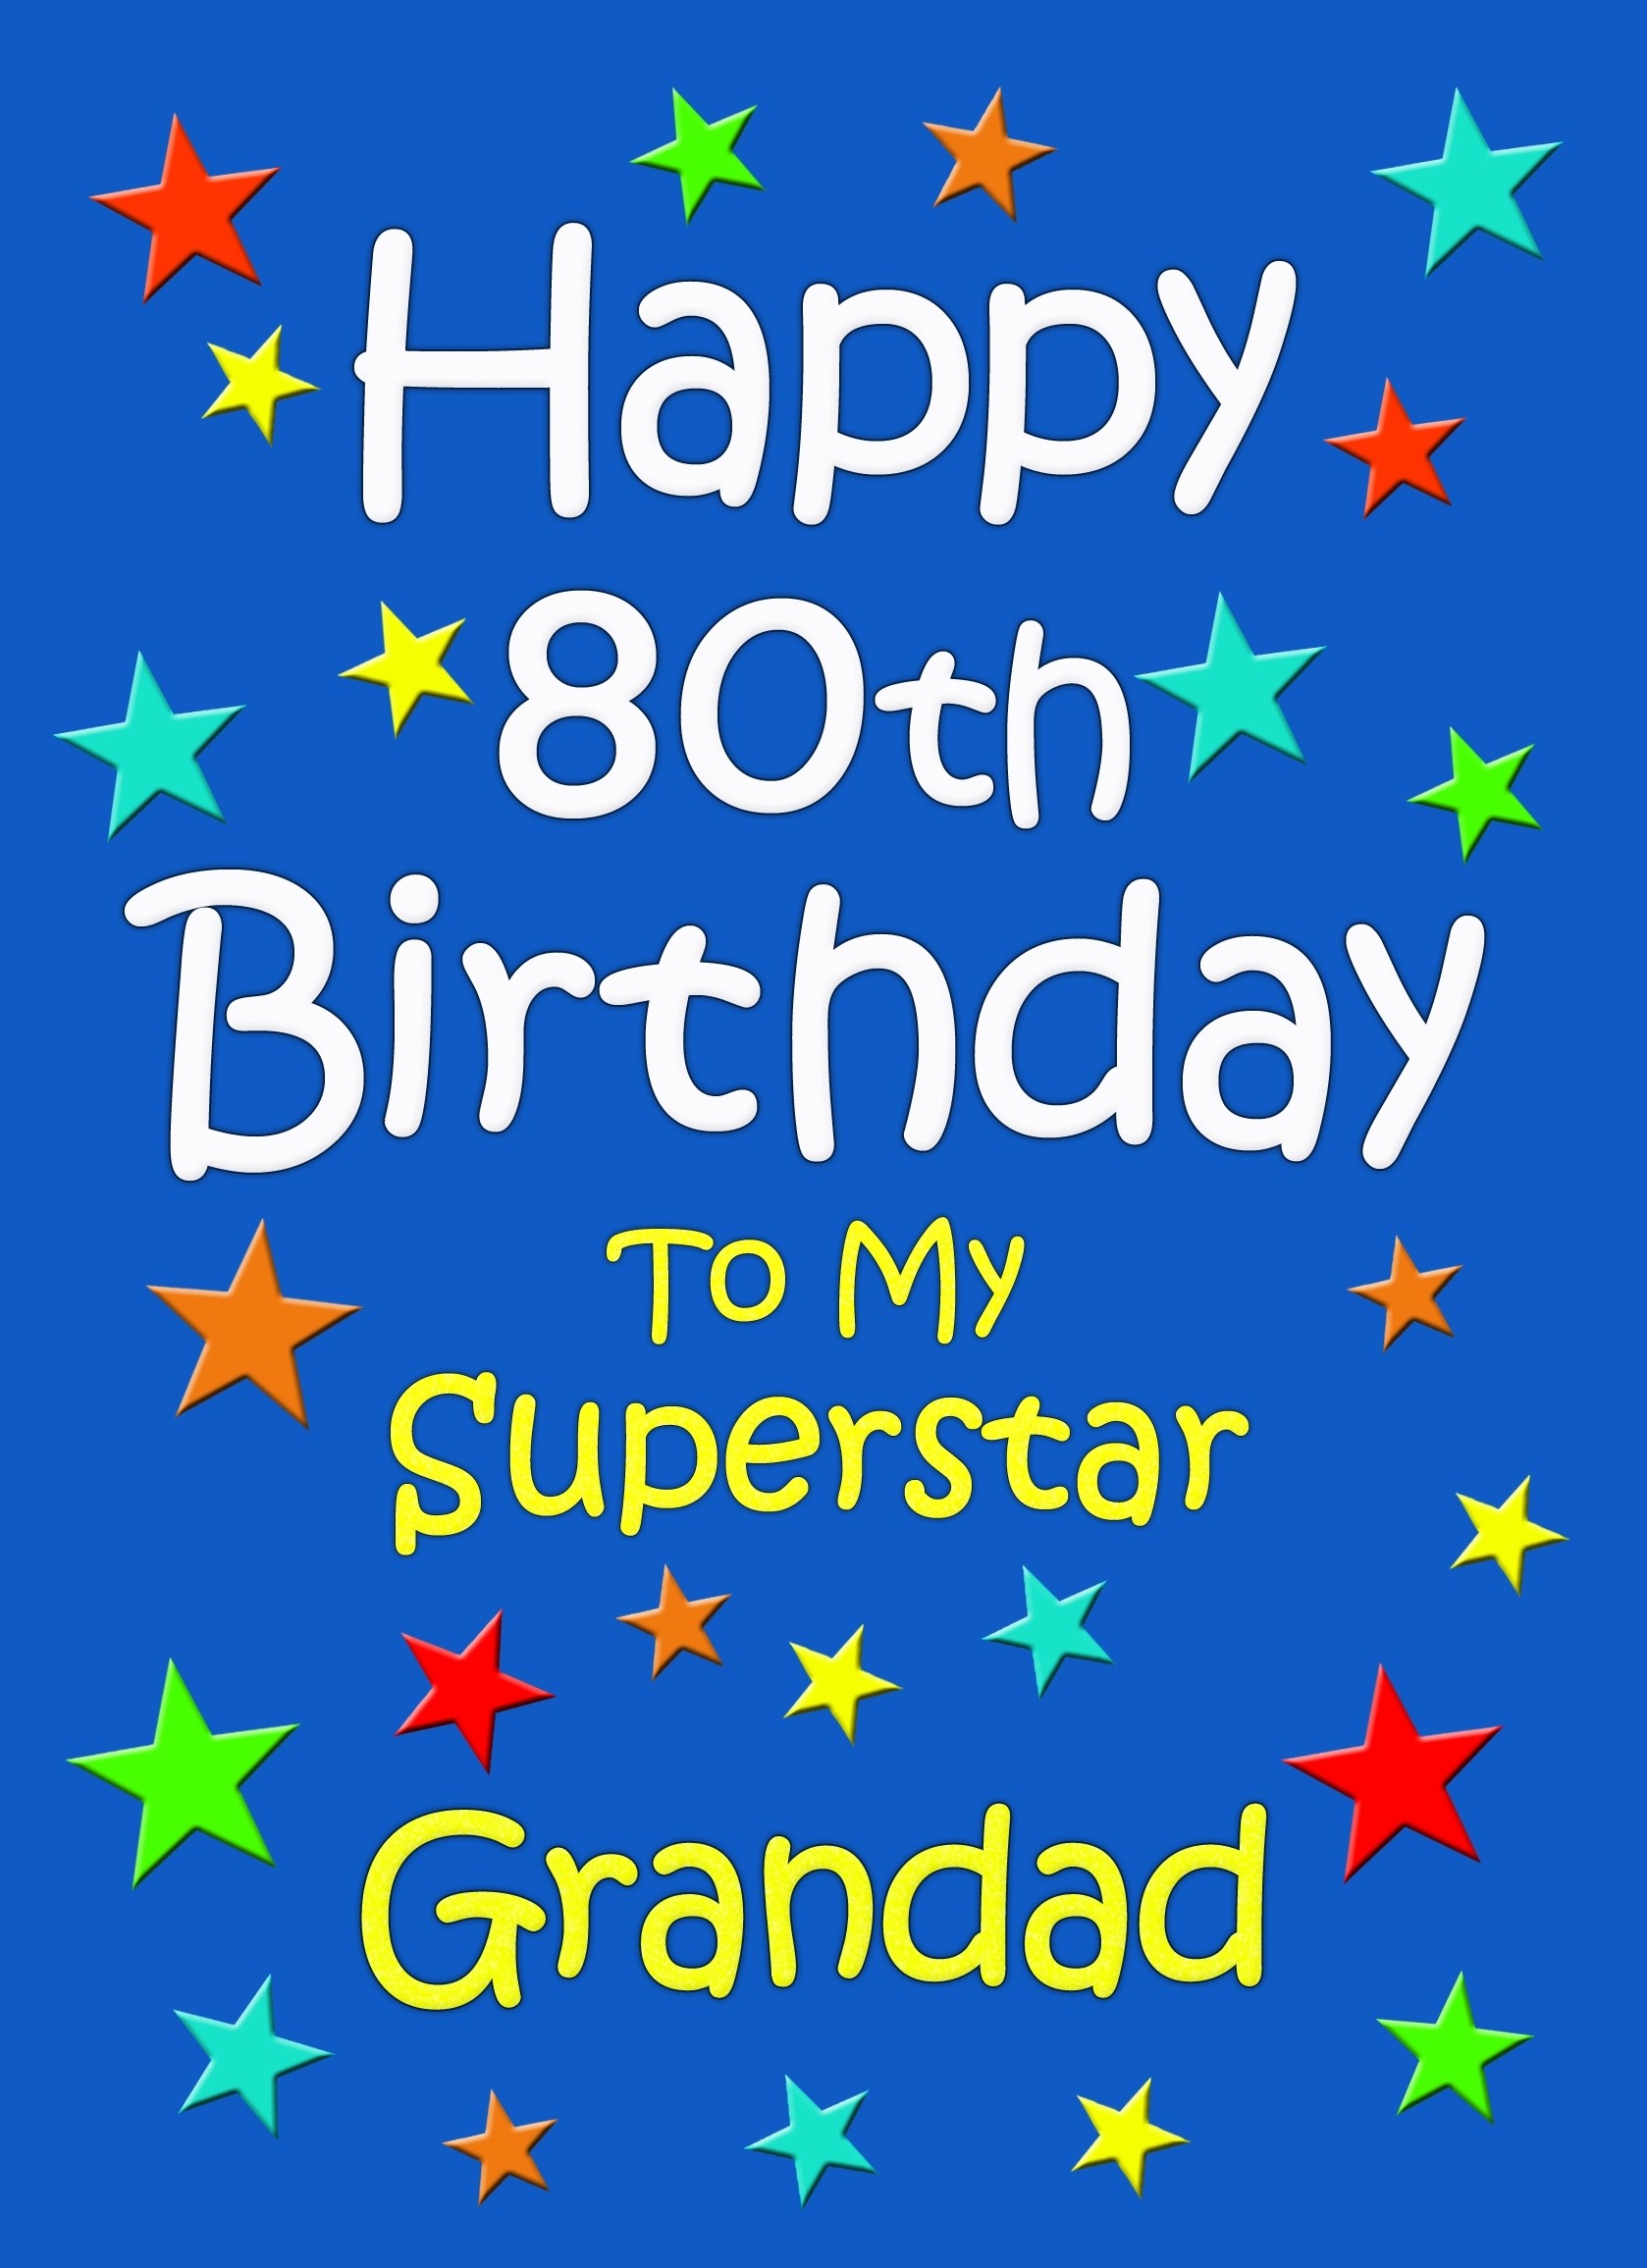 Grandad 80th Birthday Card (Blue)